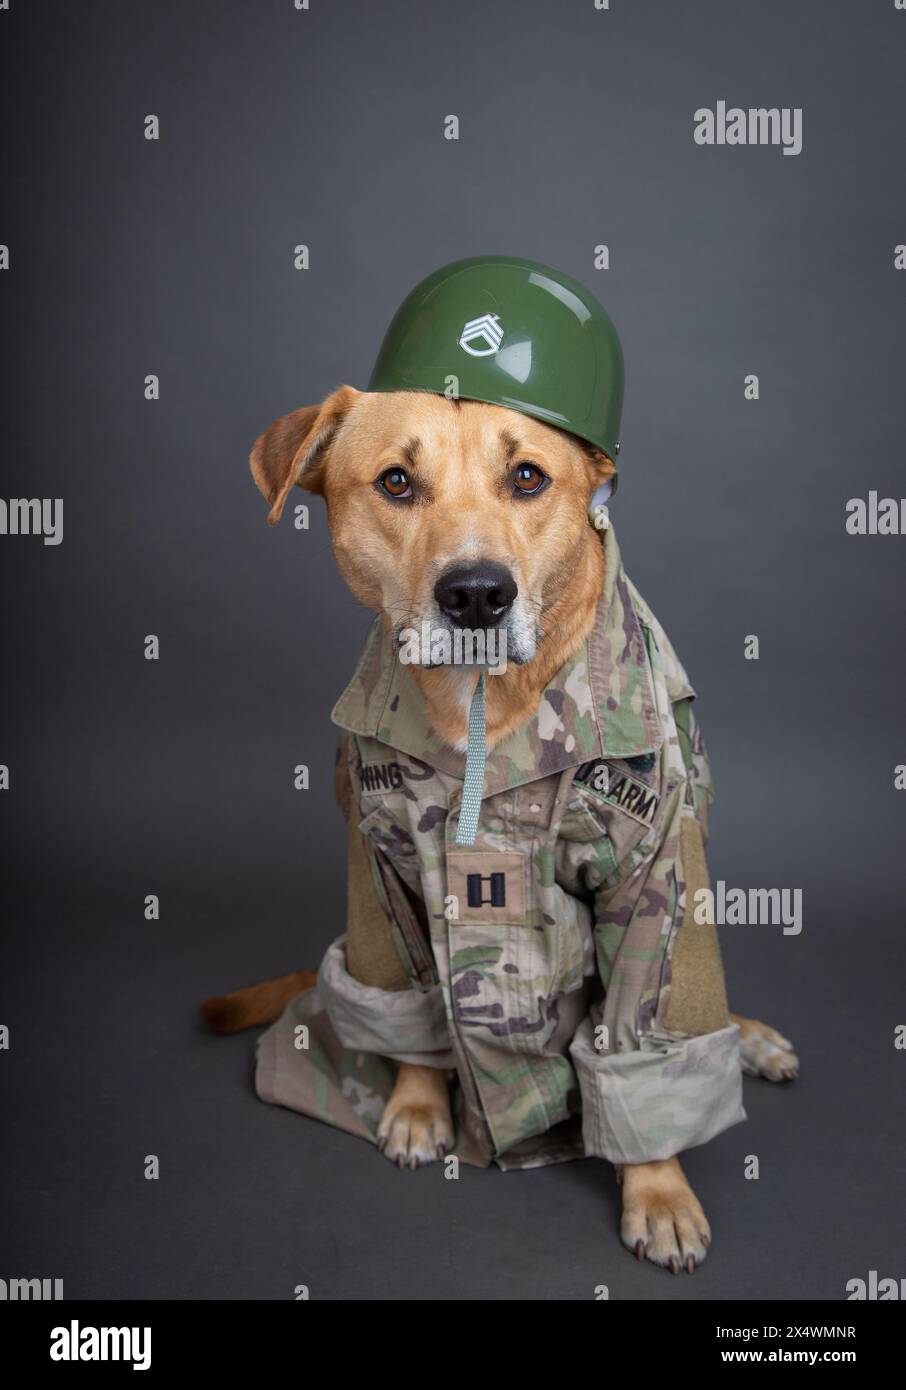 Ritratto di un labrador retriever giallo che indossa abiti mimetici dell'esercito e casco Foto Stock